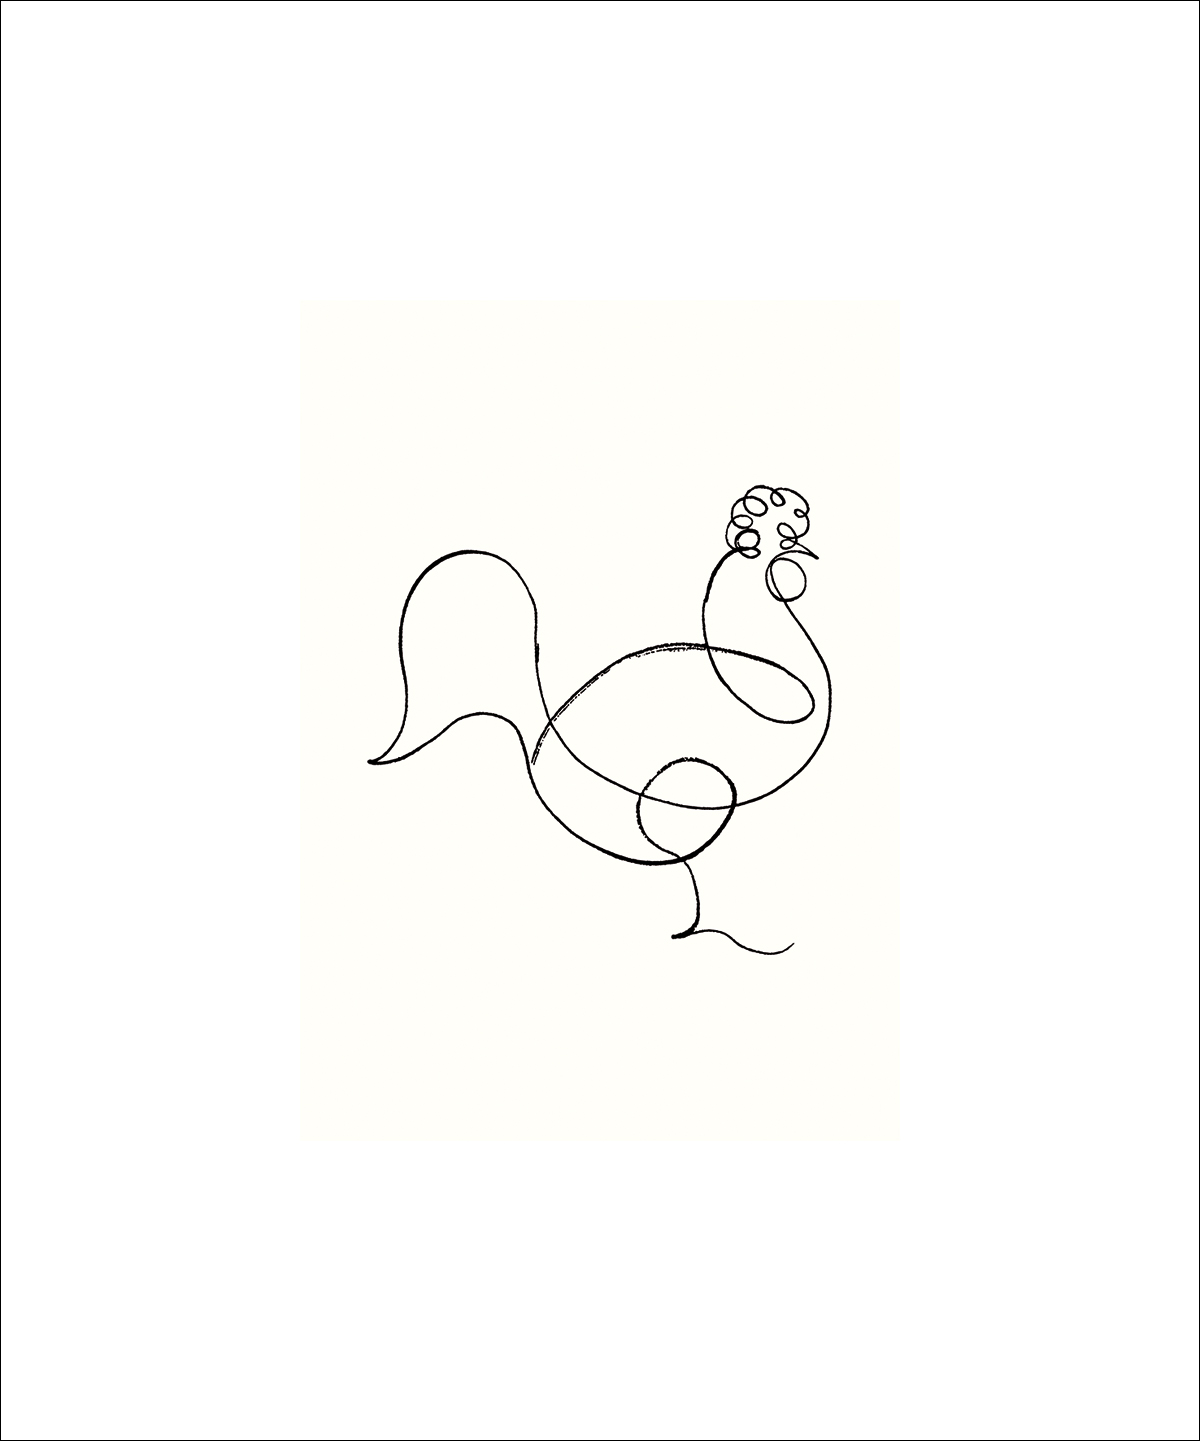 Picasso, P.: Le coq, 1918